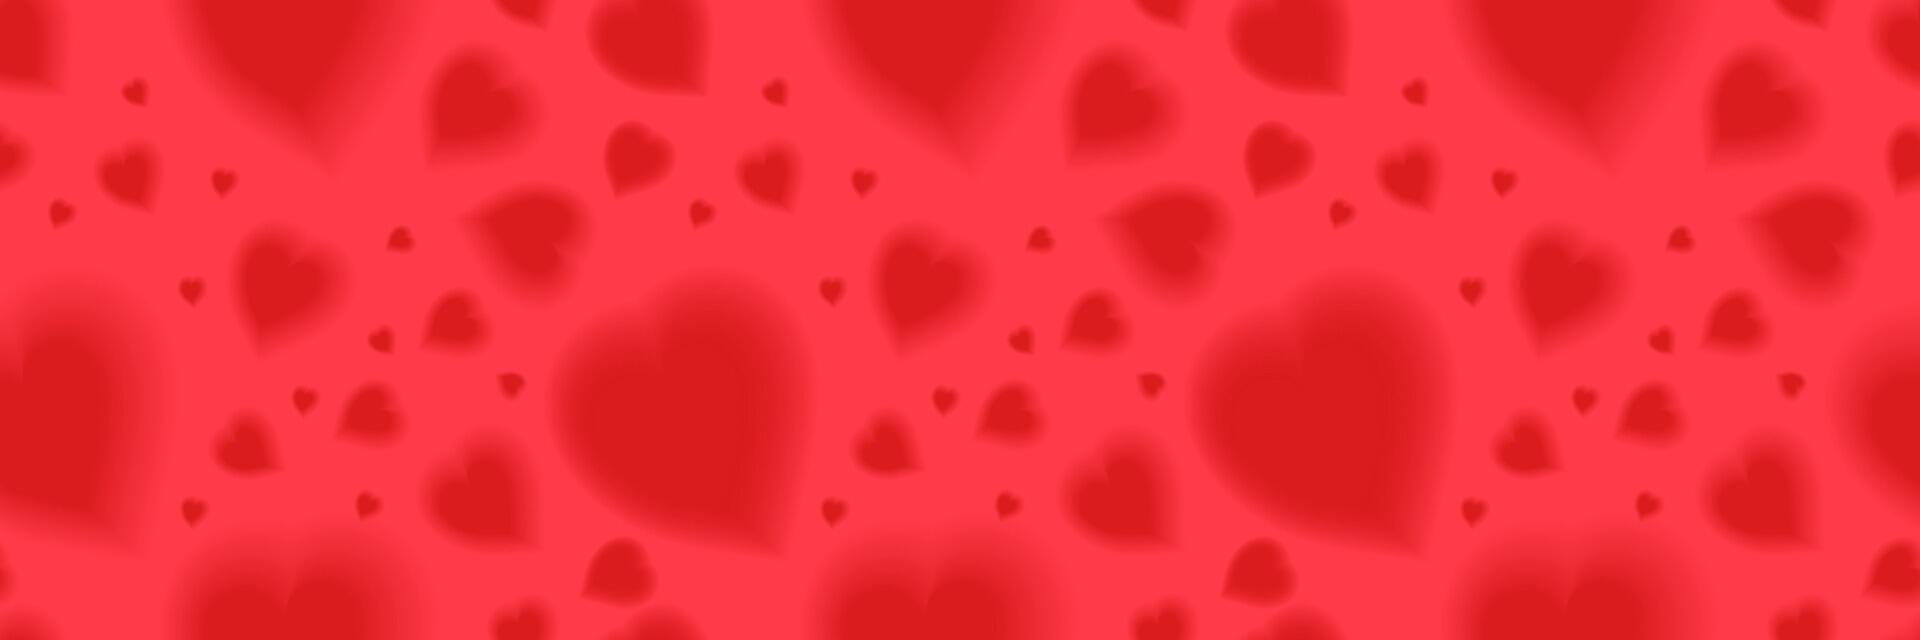 romantisch y2k rood hart naadloos patroon. vector